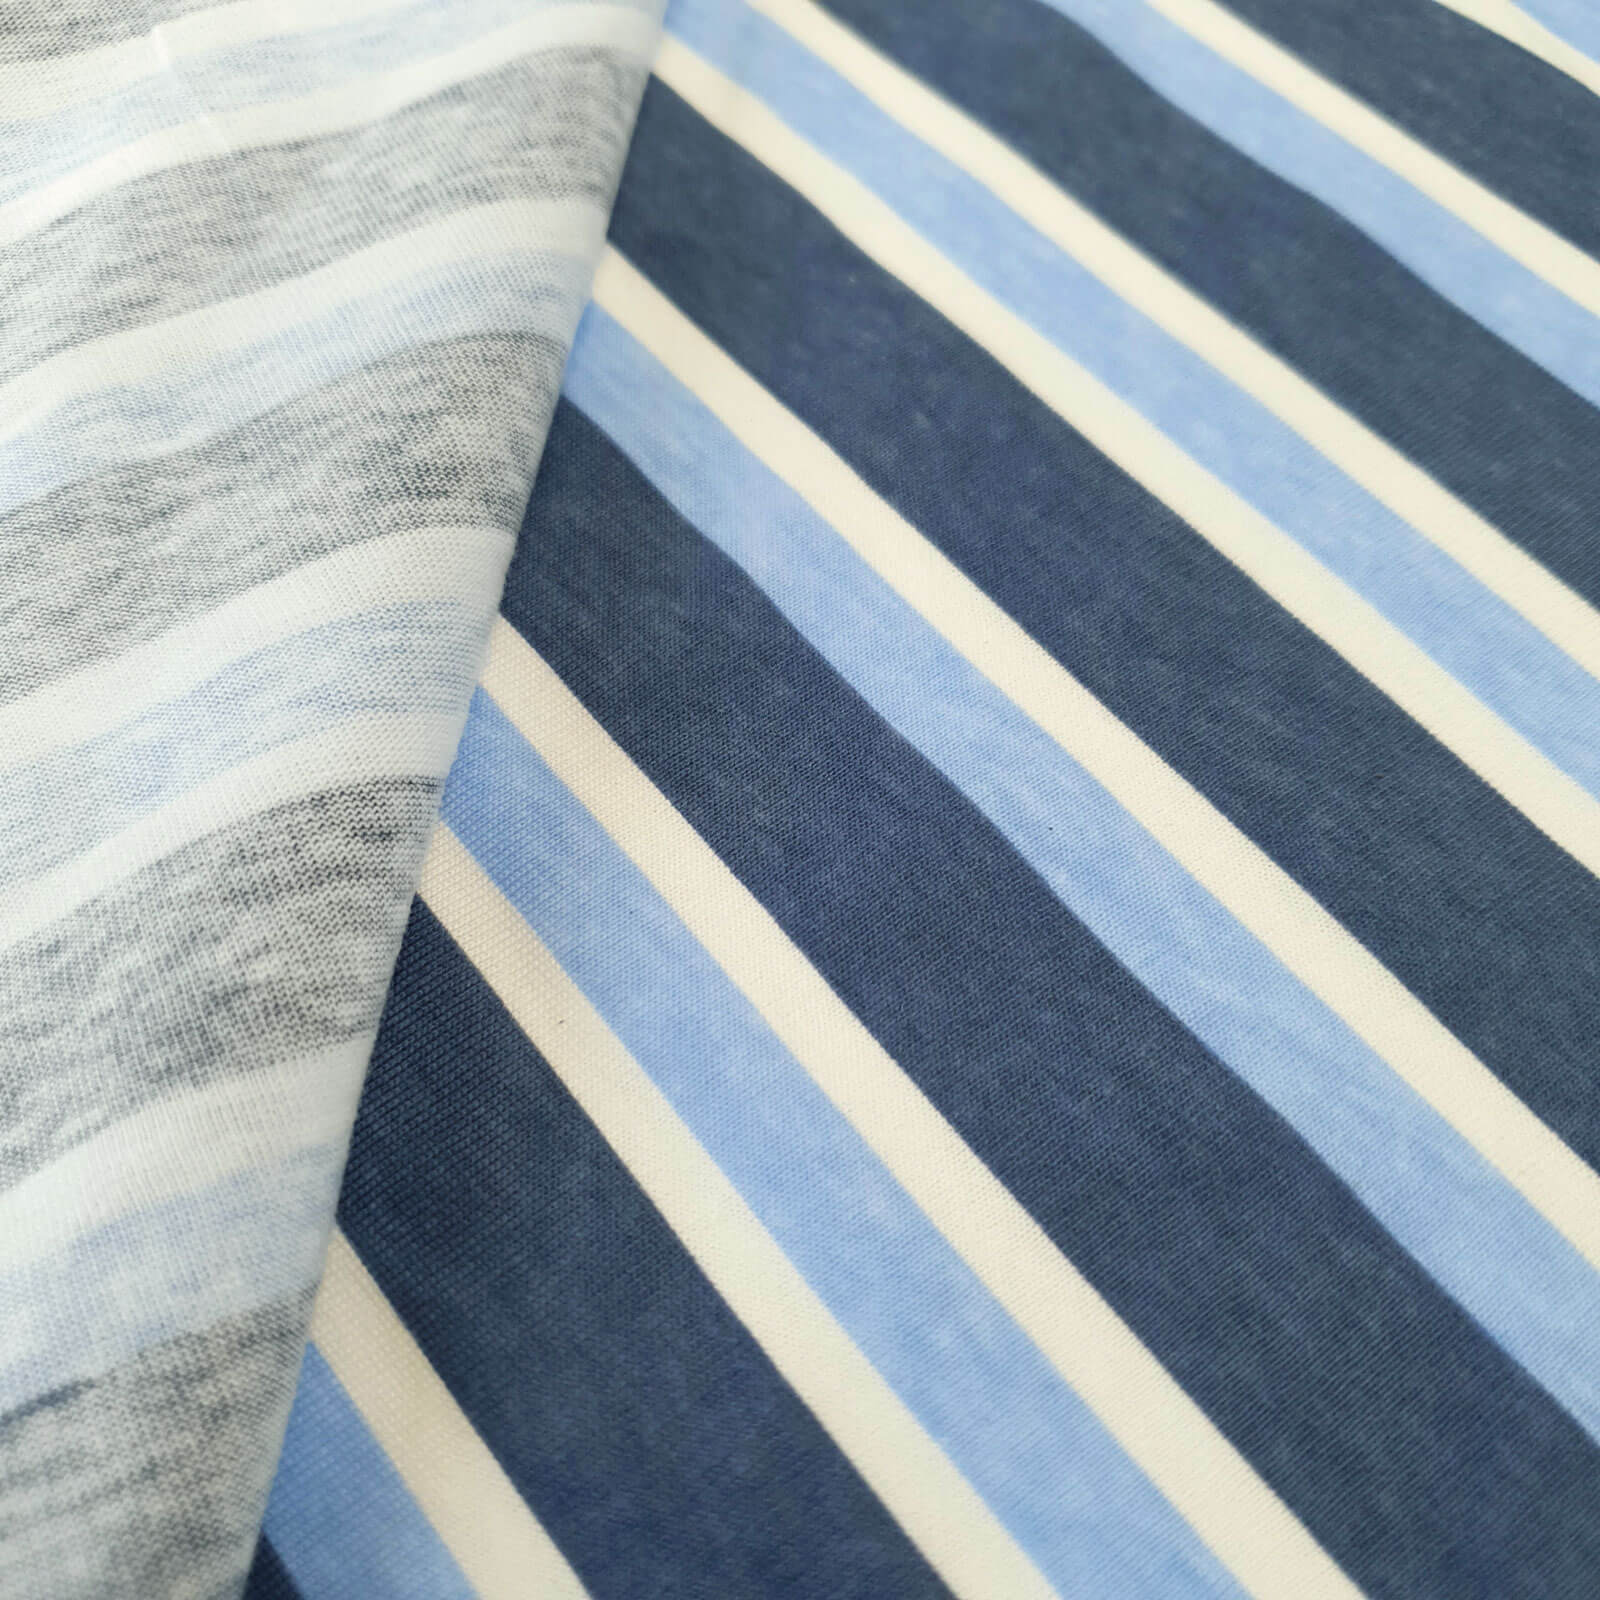 Cyrian - Baumwoll-Jersey mit Querstreifen in Überbreite - Blau/Weiß